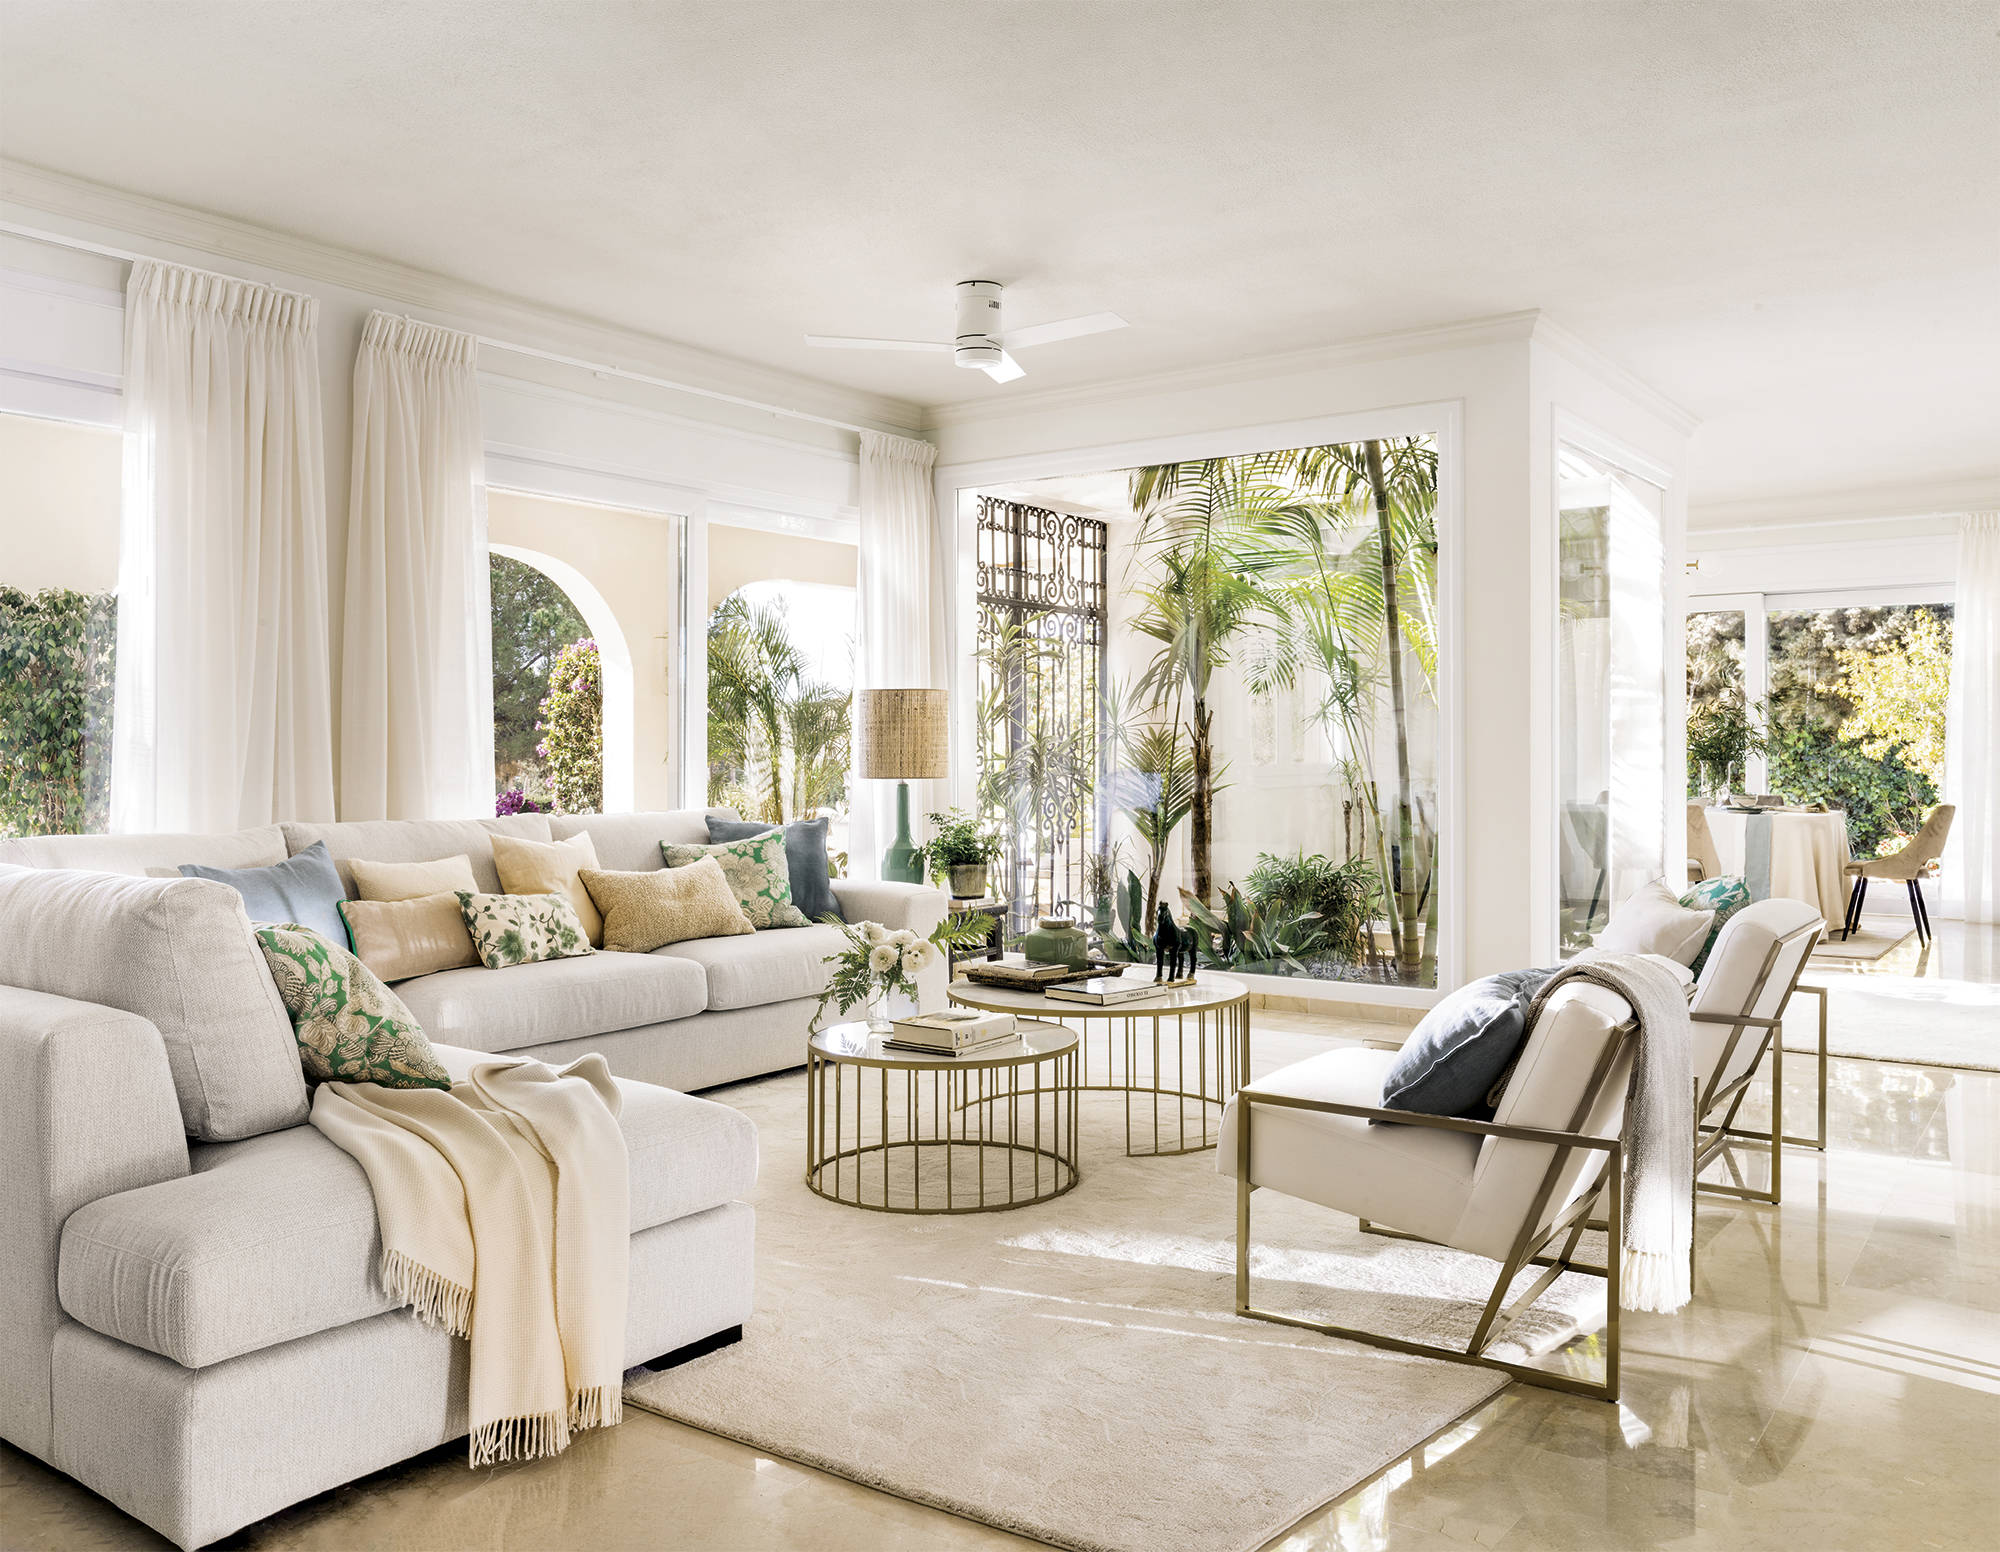 Salón blanco elegante con sofá rinconera, detalles dorados y patio interior